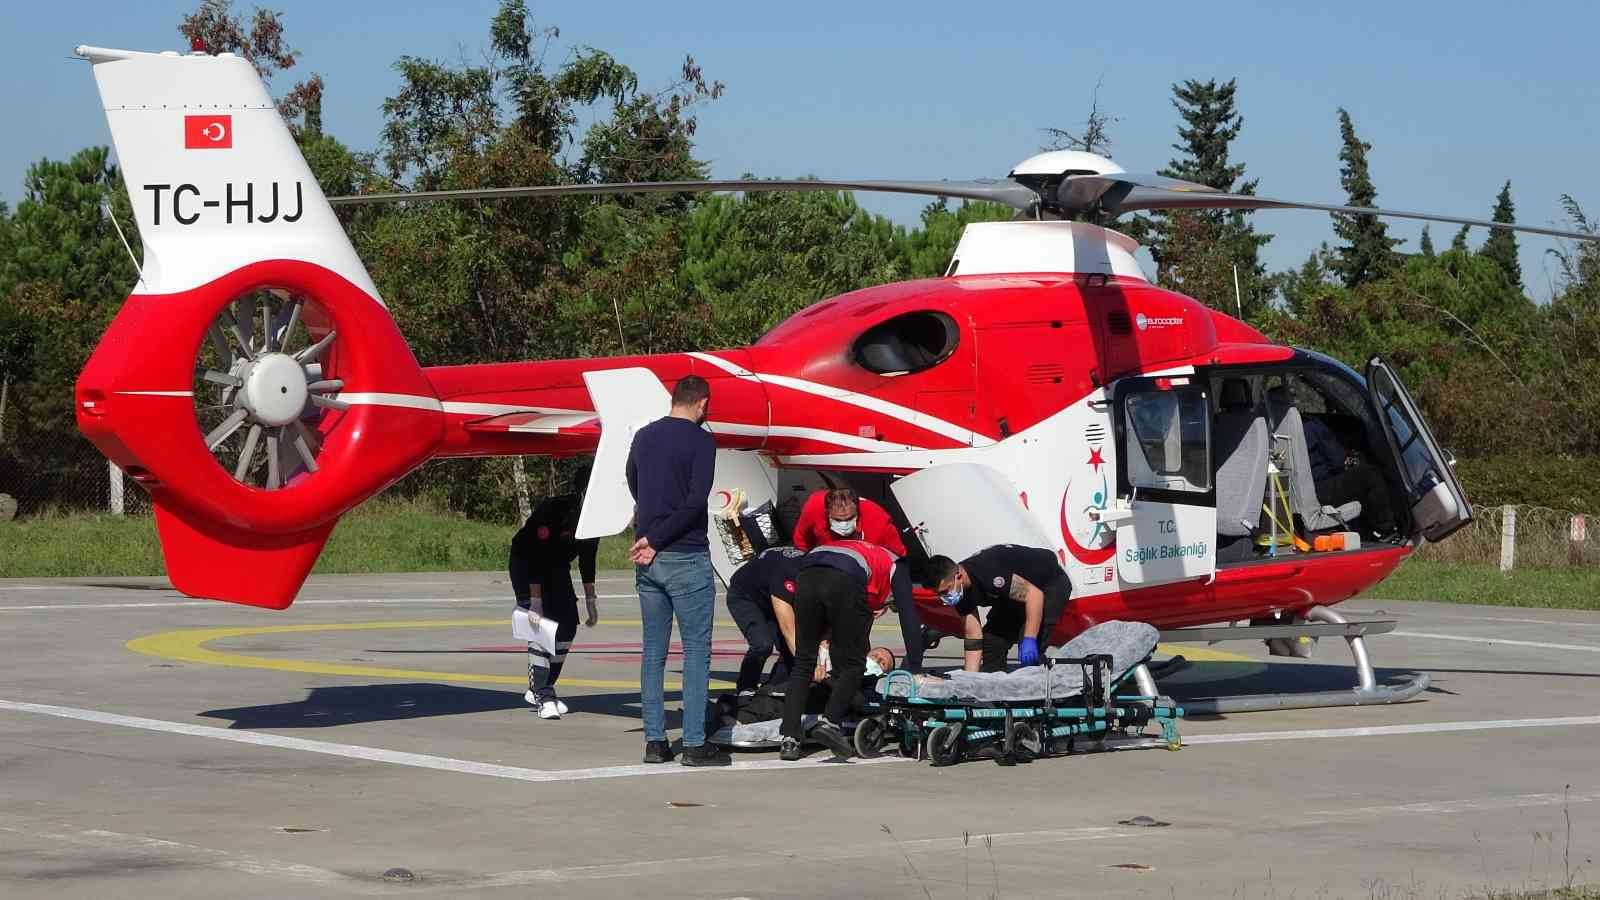 Acil anjiyo olması gereken hasta ambulans helikopterle hastaneye yetiştirildi
